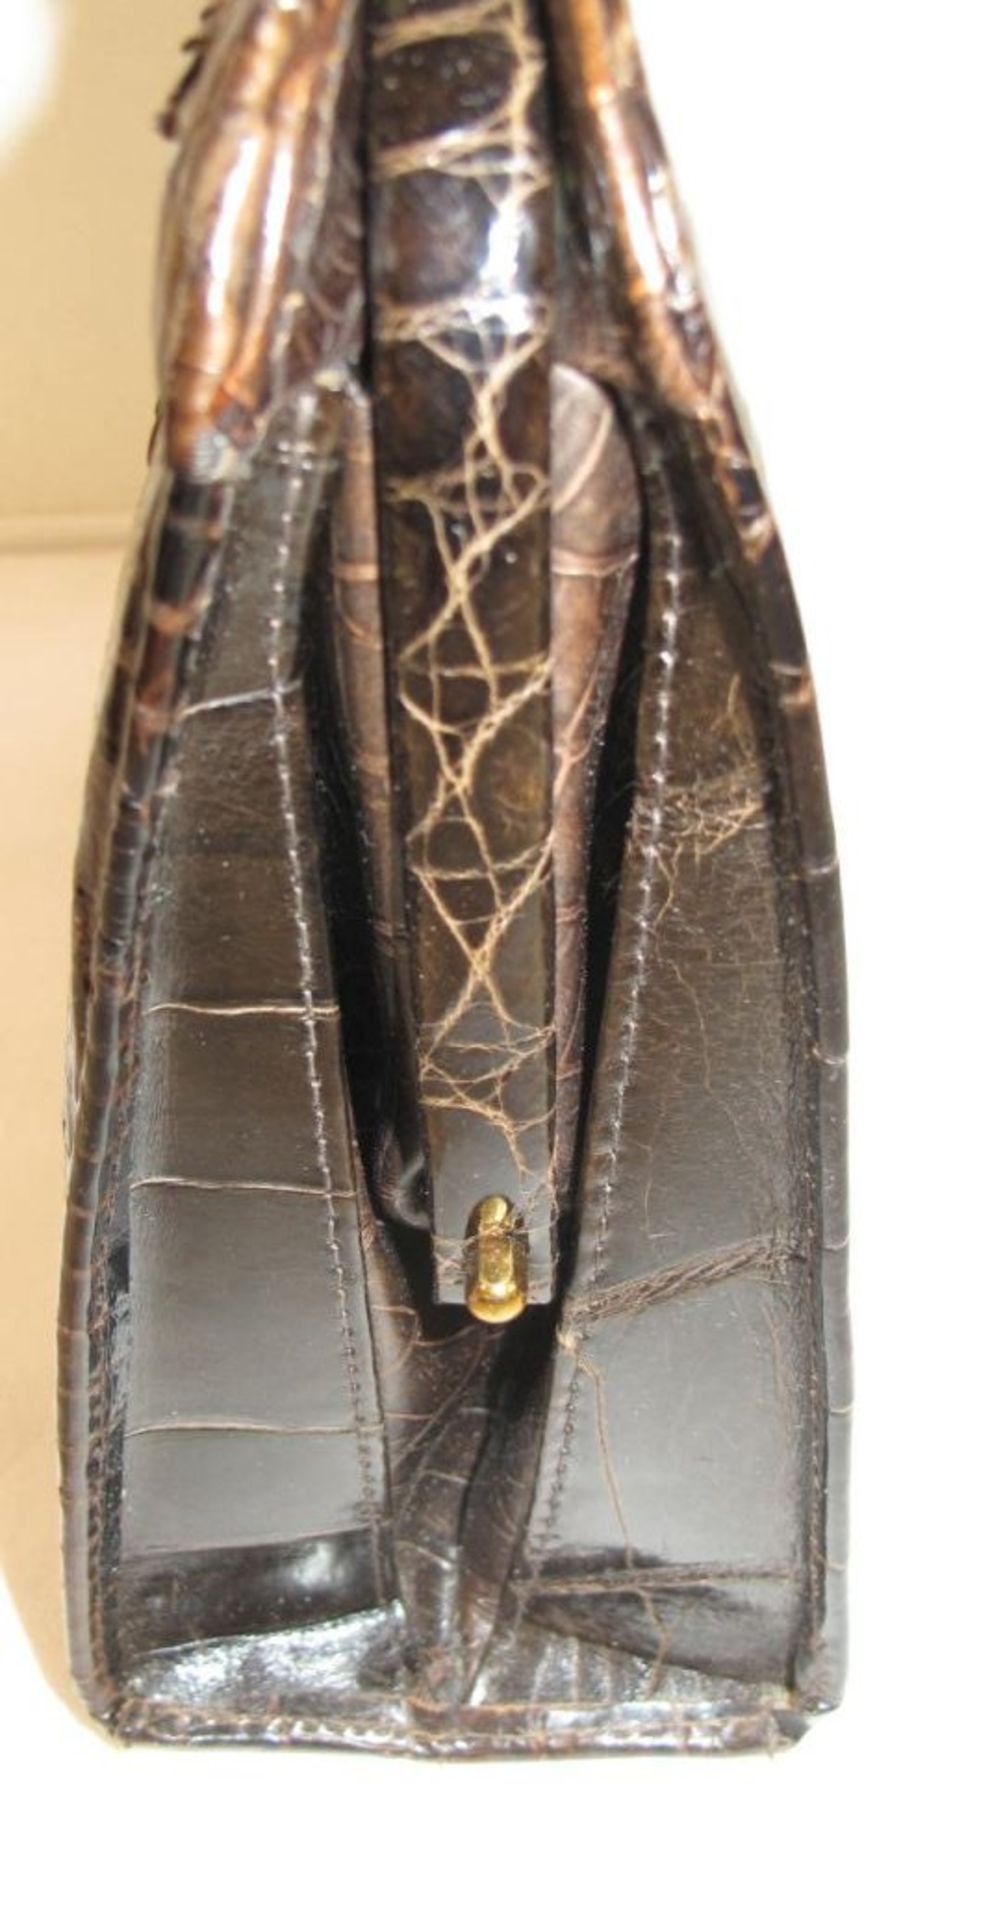 Damenhandtasche, Krokoleder, wohl 60/70er Jahre, 19 x 24cm, leichte Tragespuren. - Bild 3 aus 3